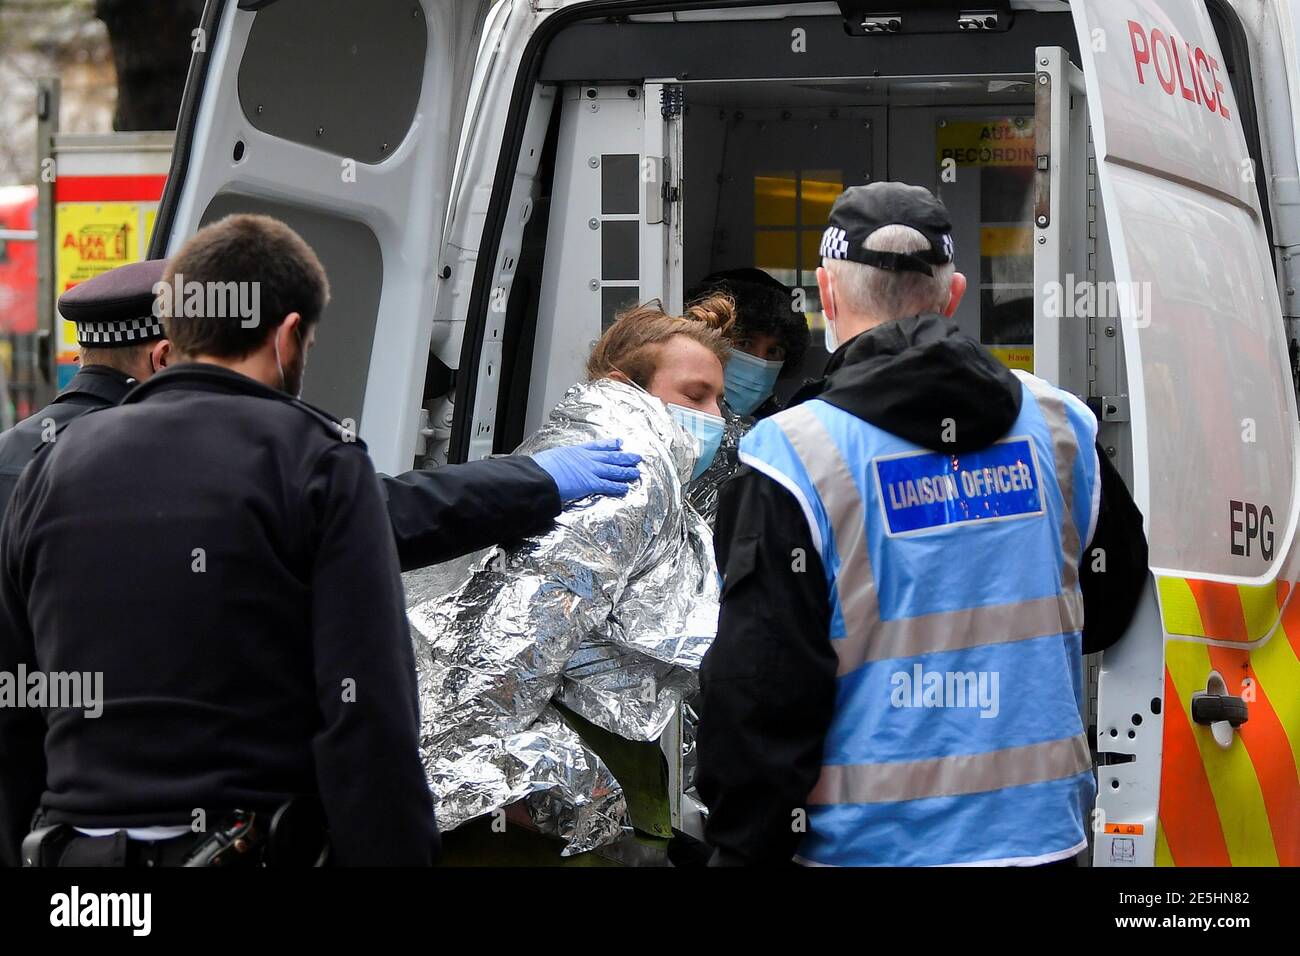 Un oficial de policía detiene a un manifestante cuando los activistas de la rebelión de extinción ocupan túneles bajo Euston Square Gardens para protestar contra el ferrocarril de alta velocidad HS2, en Londres, Gran Bretaña 28 de enero de 2021. REUTERS/Toby Melville Foto de stock